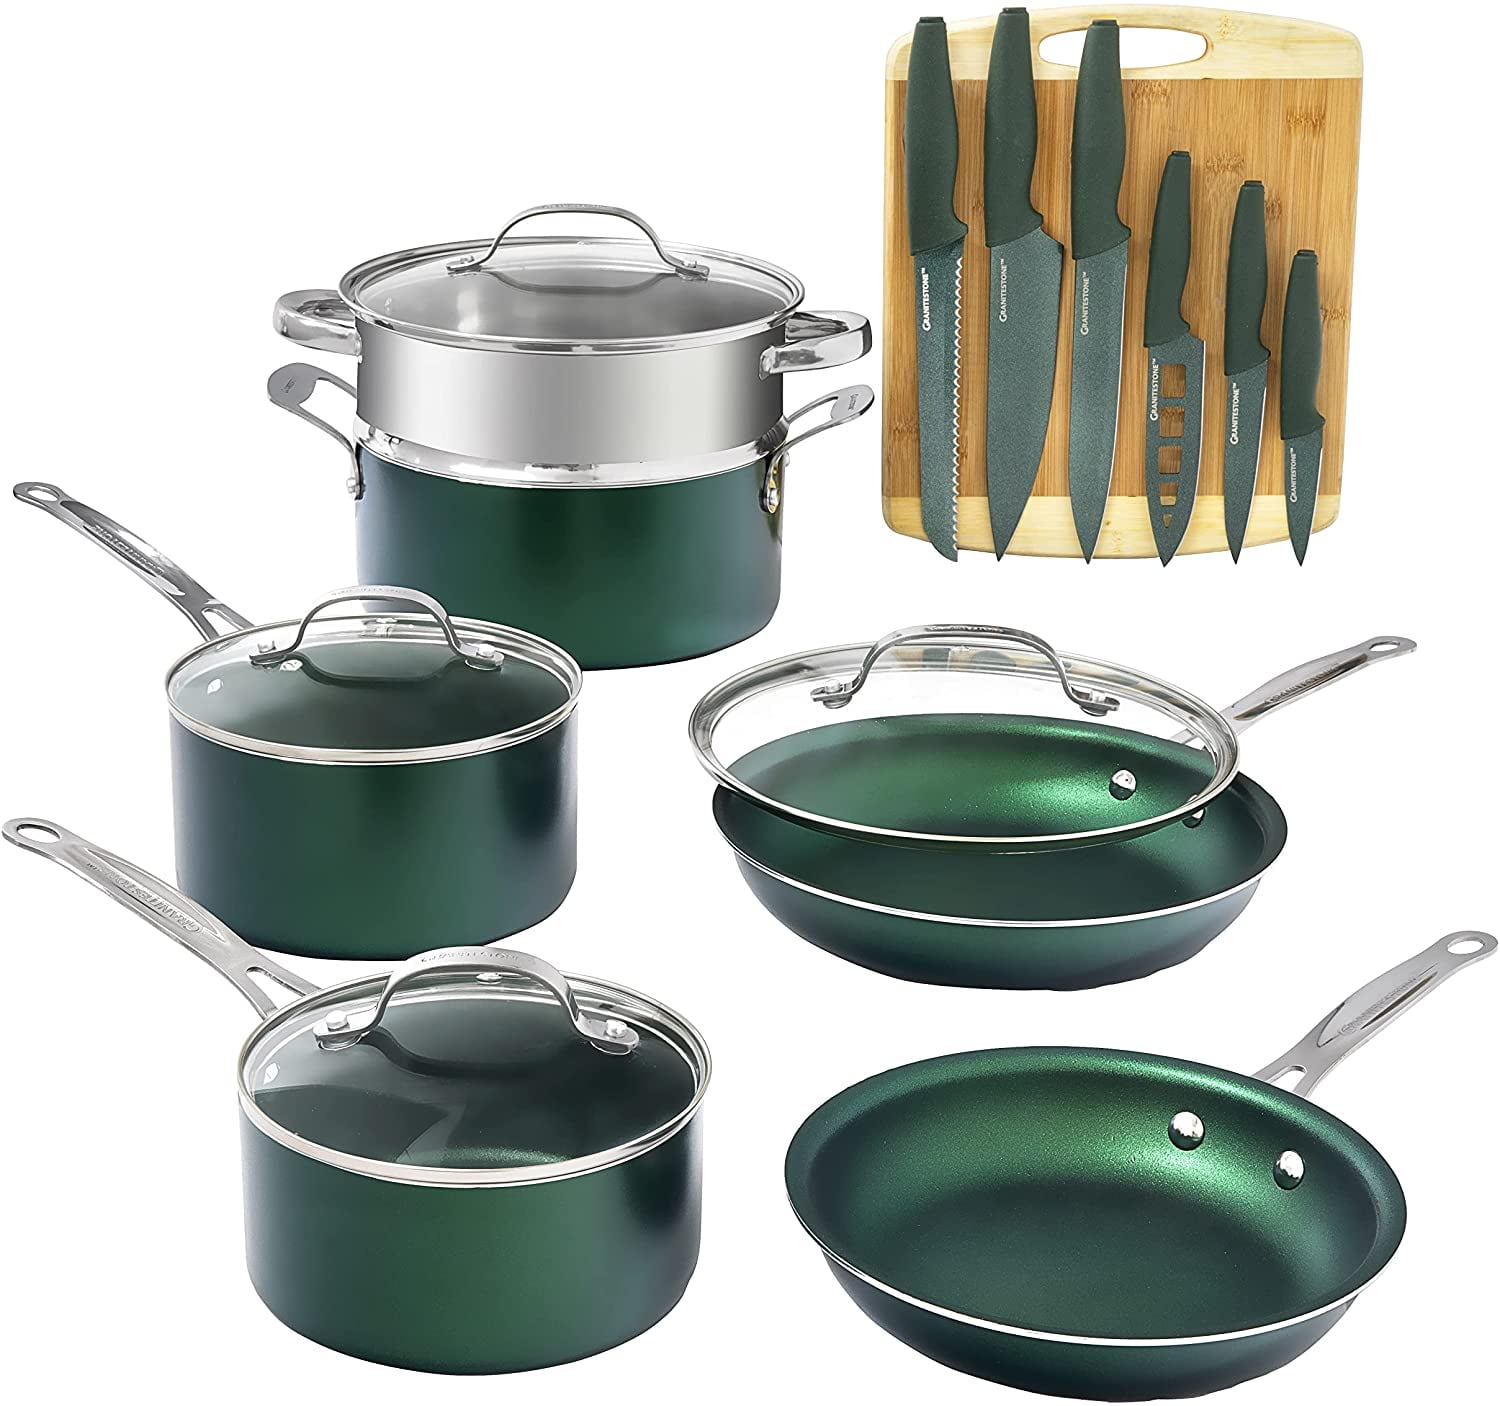 Granitestone Emerald 10 Piece Nonstick Cookware Set : Target